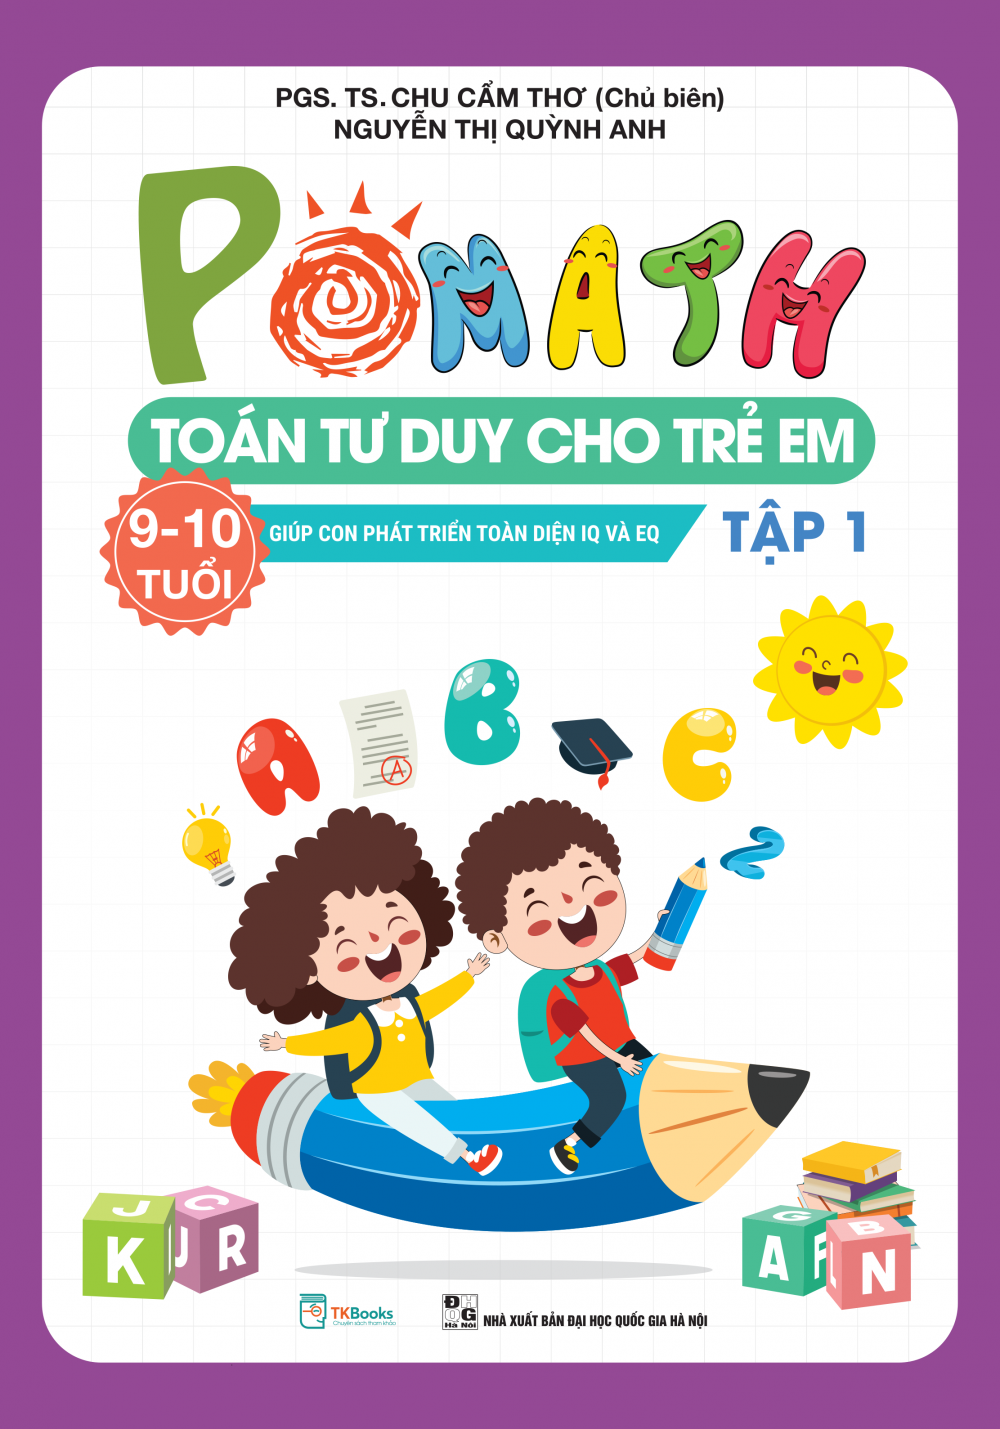 POMath – Toán tư duy cho trẻ em 9 – 10 tuổi - Tập 1